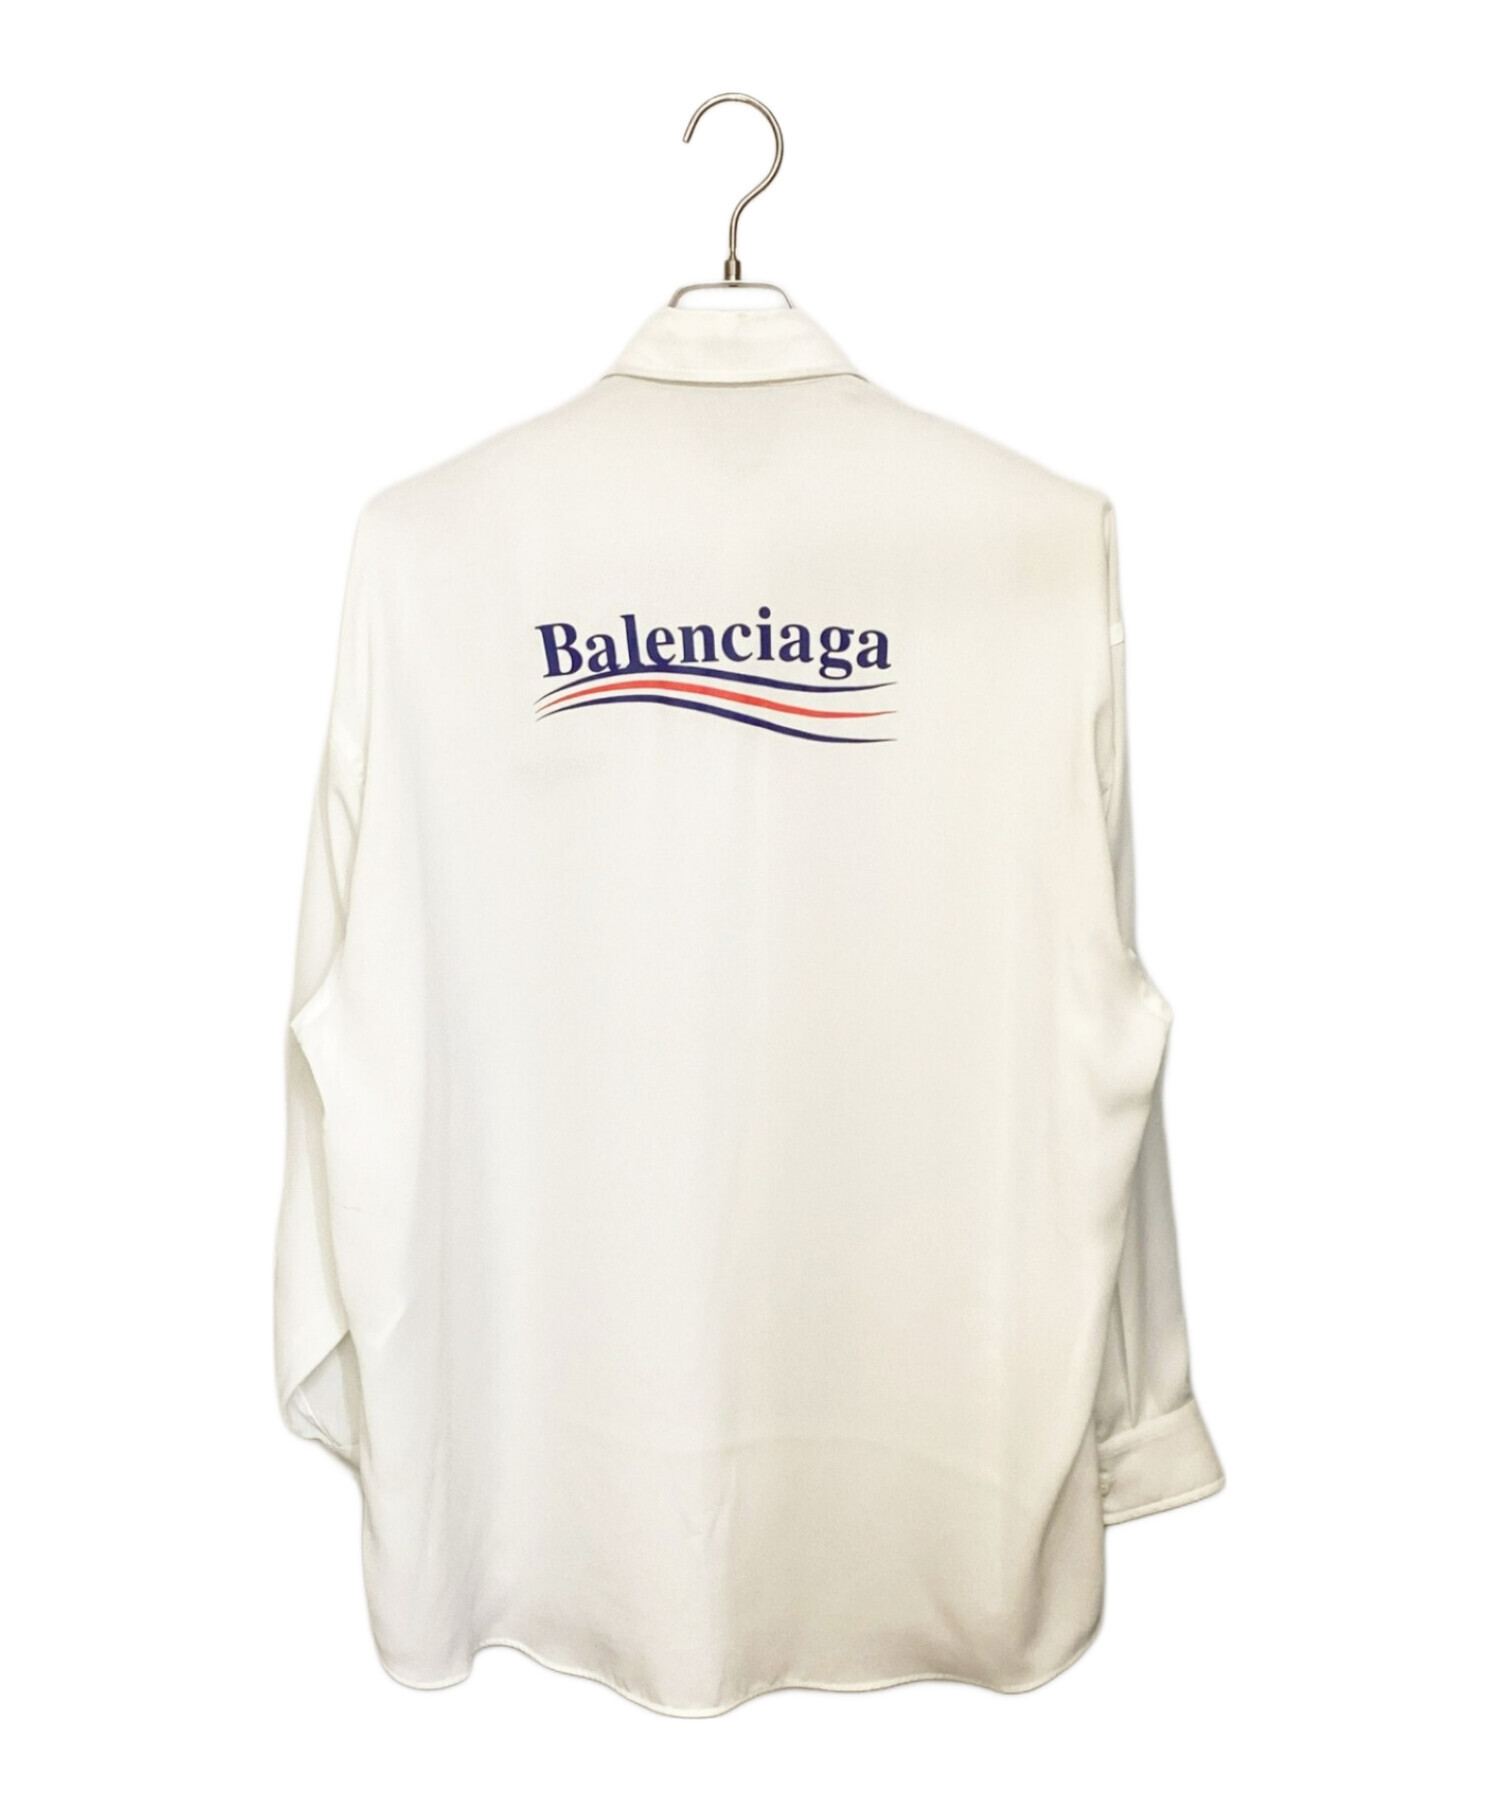 BALENCIAGA (バレンシアガ) キャンペーンロゴシアーシャツ ホワイト サイズ:34